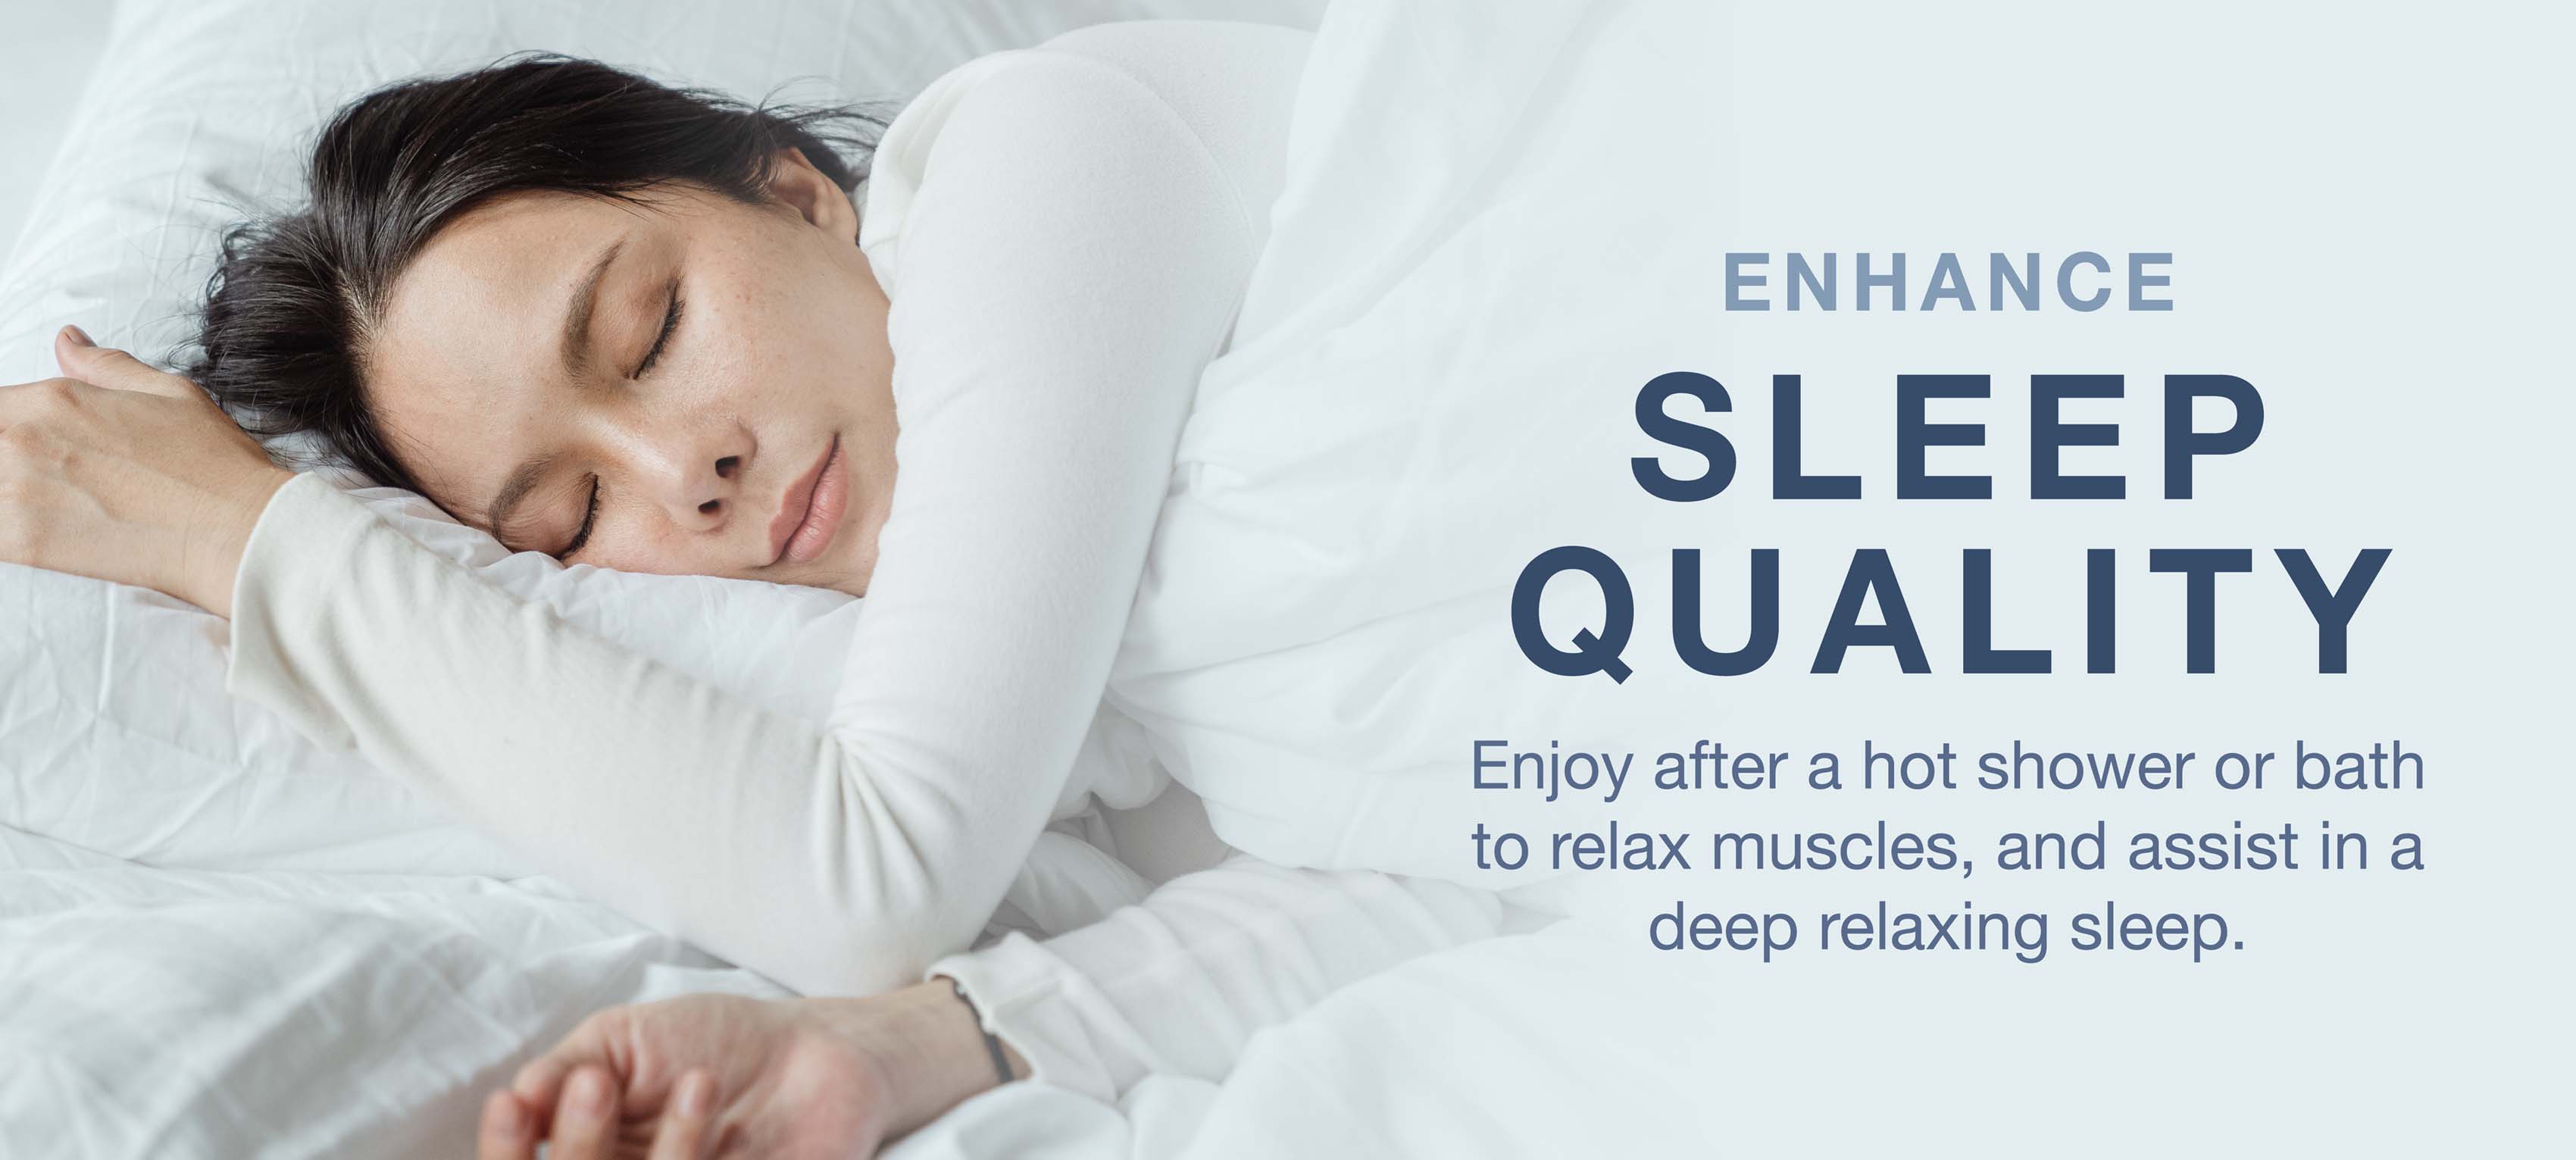 Mejore la calidad del sueño después de una ducha o baño caliente para relajar los músculos y ayudar a lograr un sueño profundo y relajante.